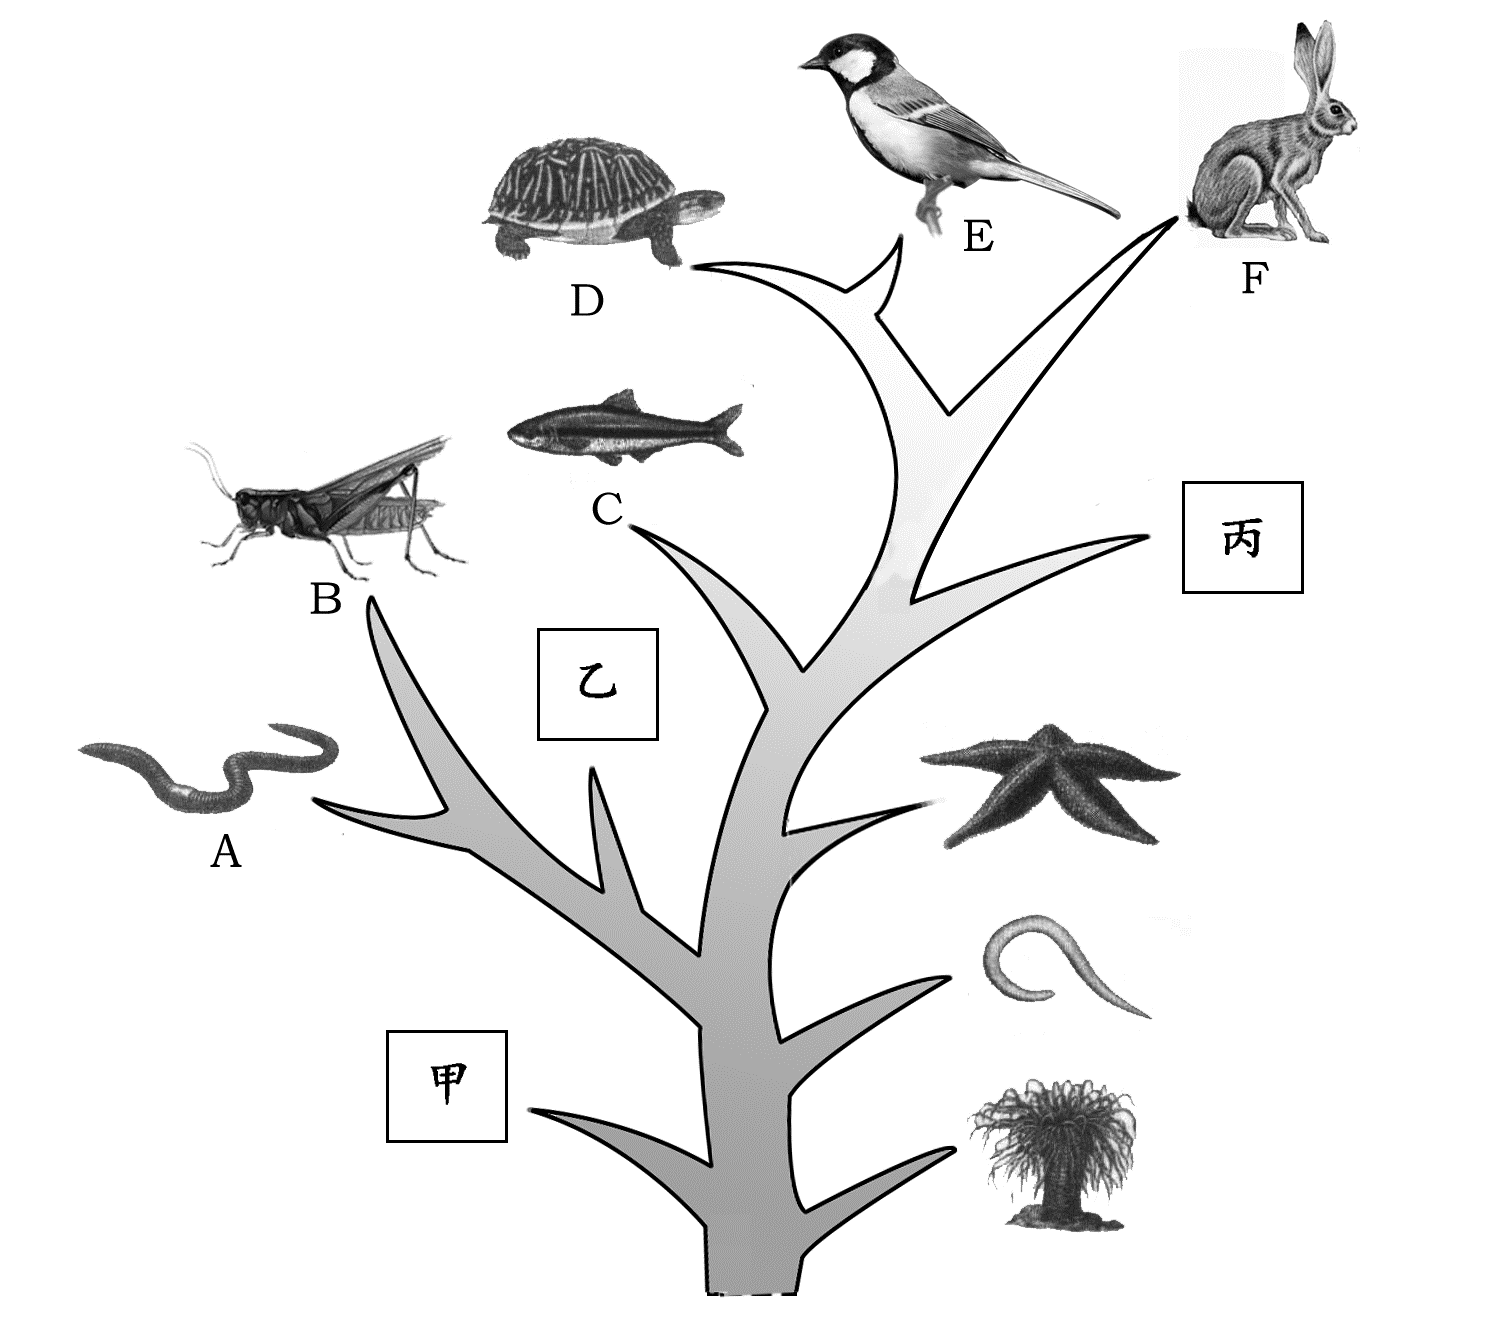 生物进化树 古生物图片